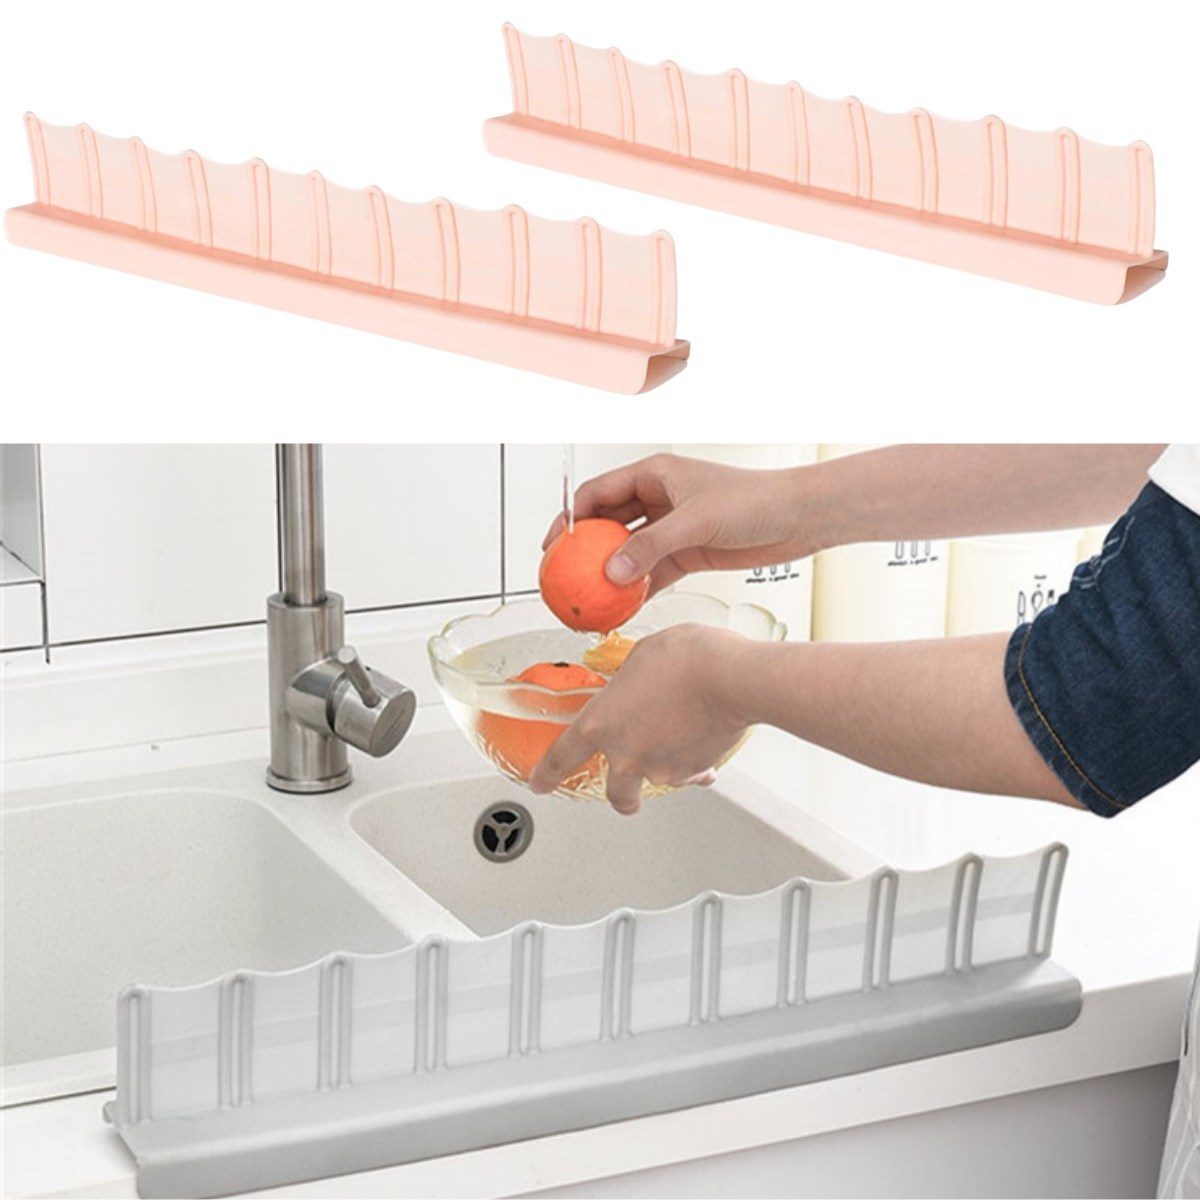 CLZ192 Vantuzlu Kauçuk Sıvı Su Sızdırmaz İzalasyon Mutfak Banyo Duş Bariyeri Lavabo Kenar Tutucu Set (4172)